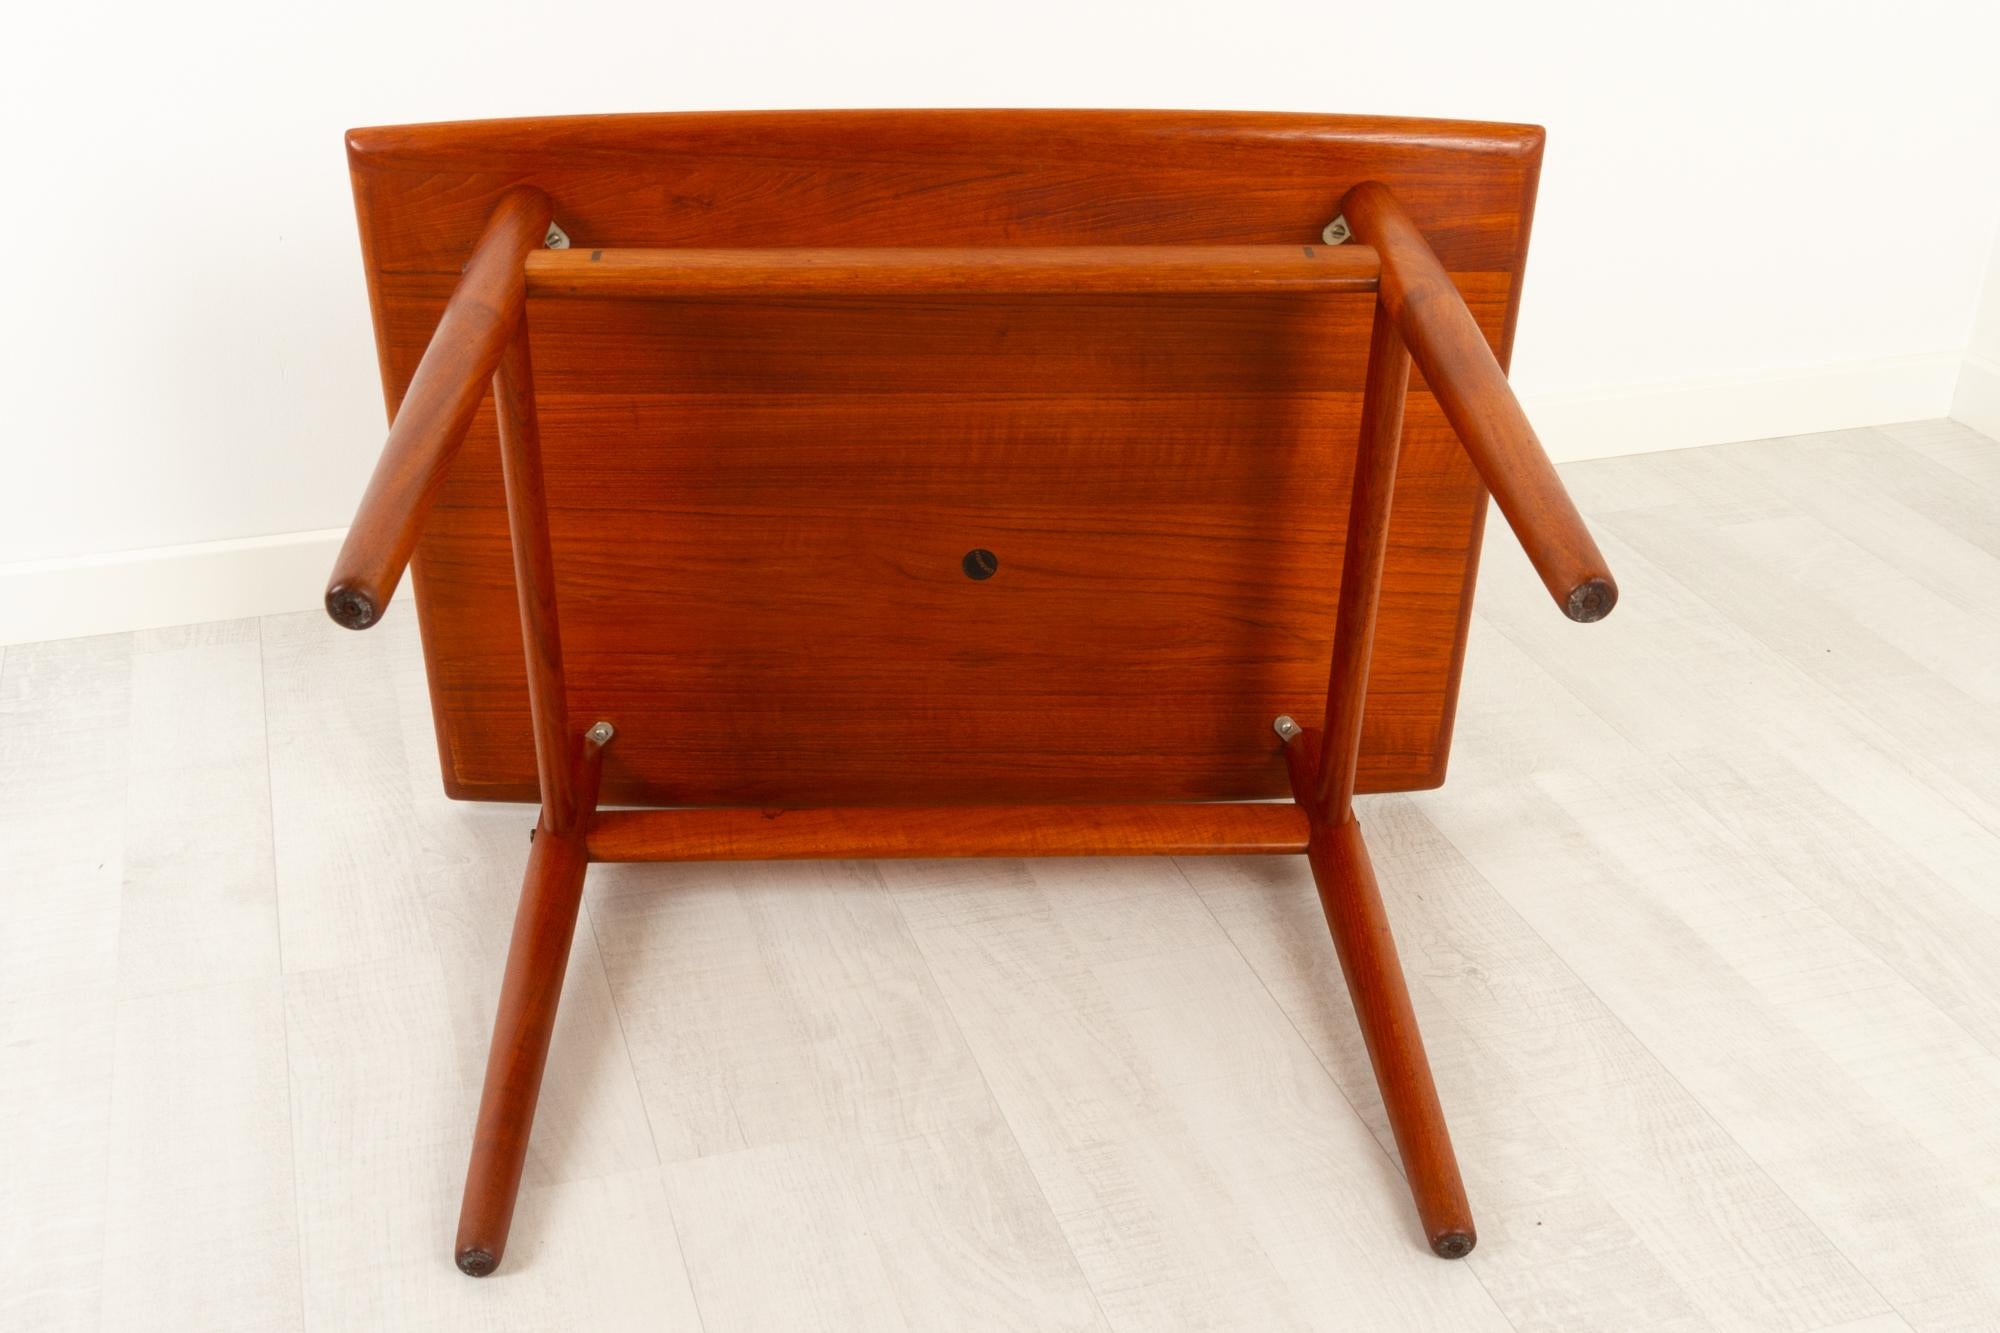 Vintage Danish Teak Side Table by Grete Jalk for Glostrup Møbelfabrik, 1960s For Sale 5